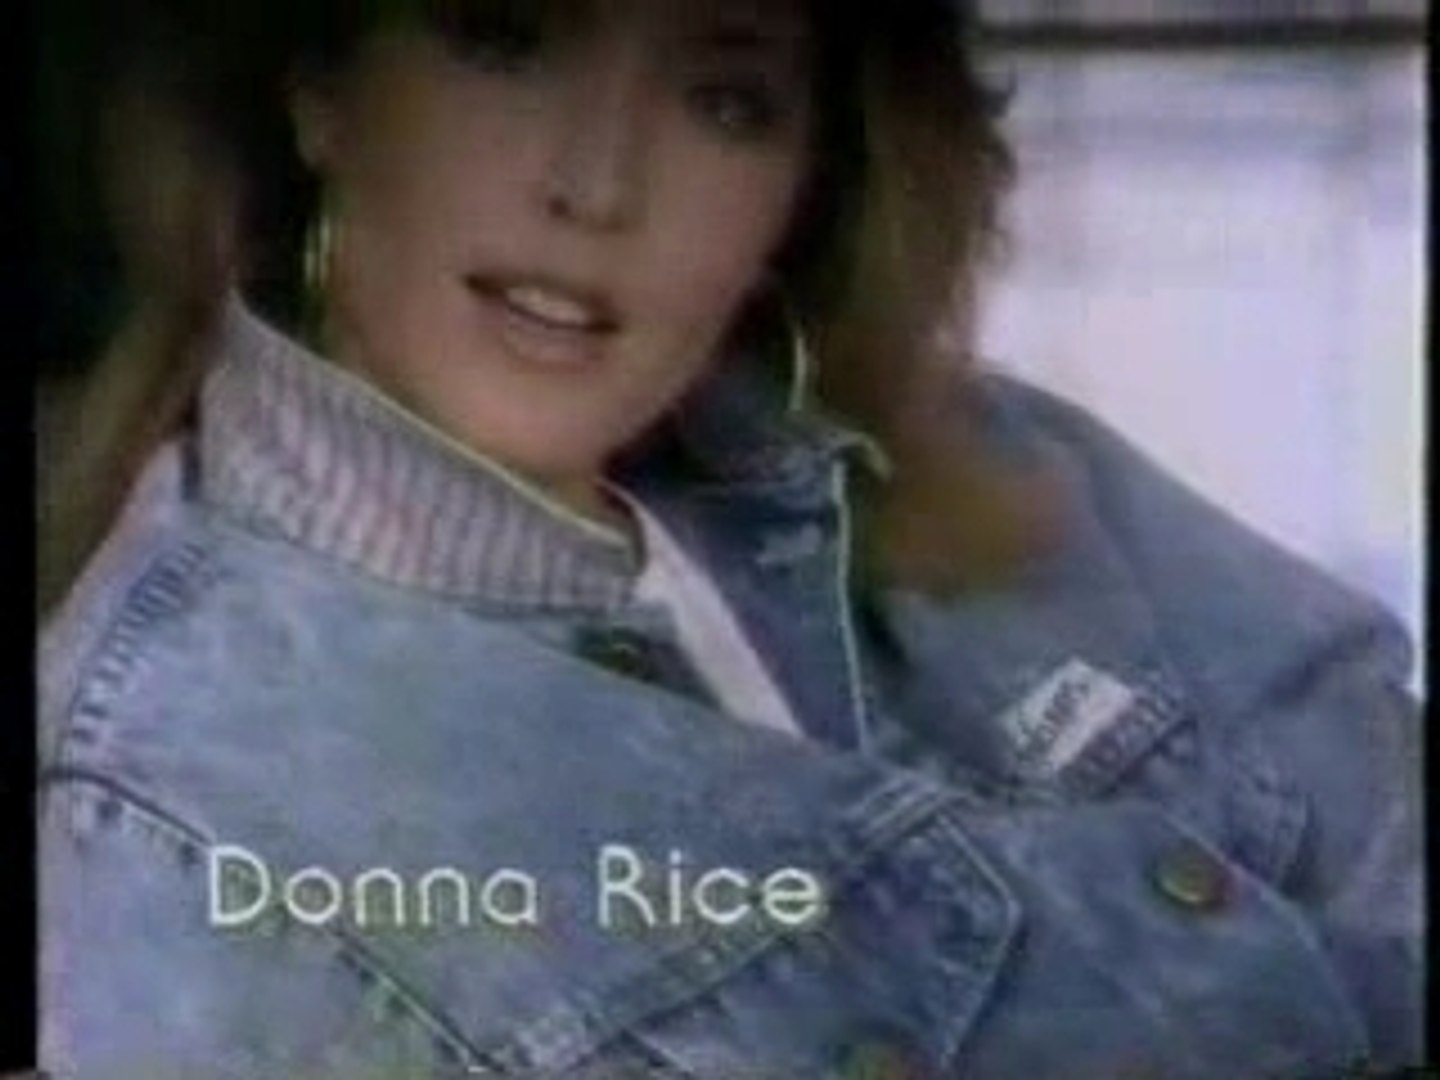 Donna rice photo